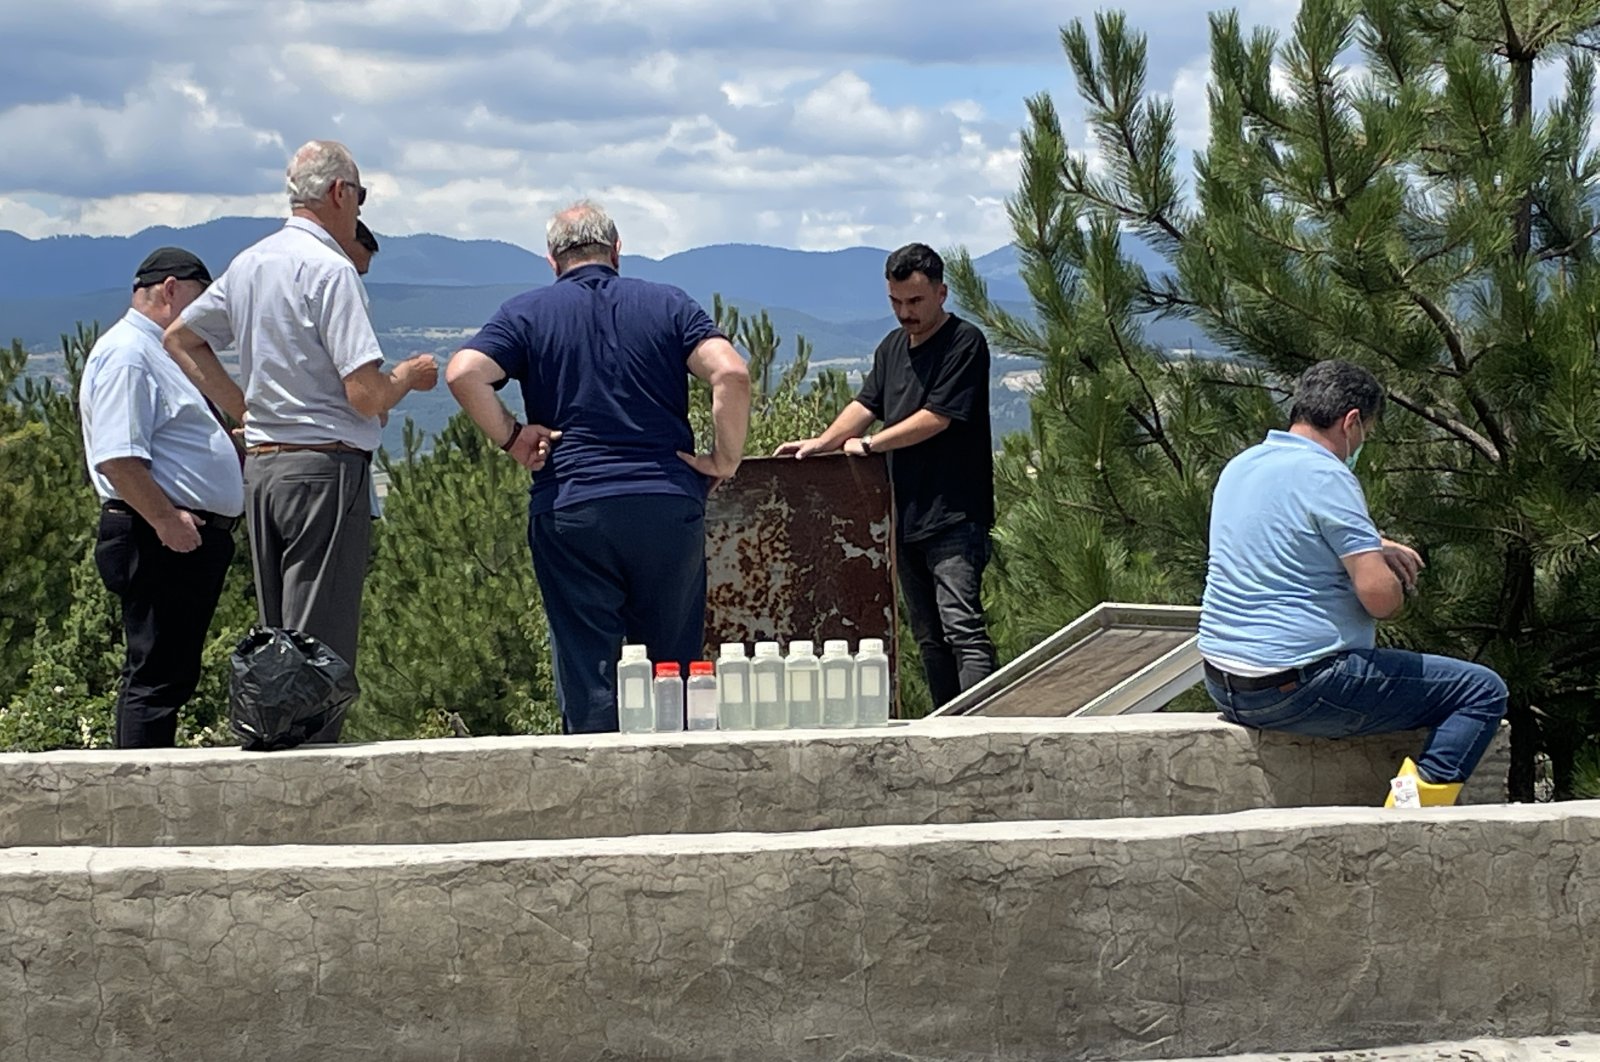 10 dalam perawatan intensif setelah keracunan massal di desa Turki